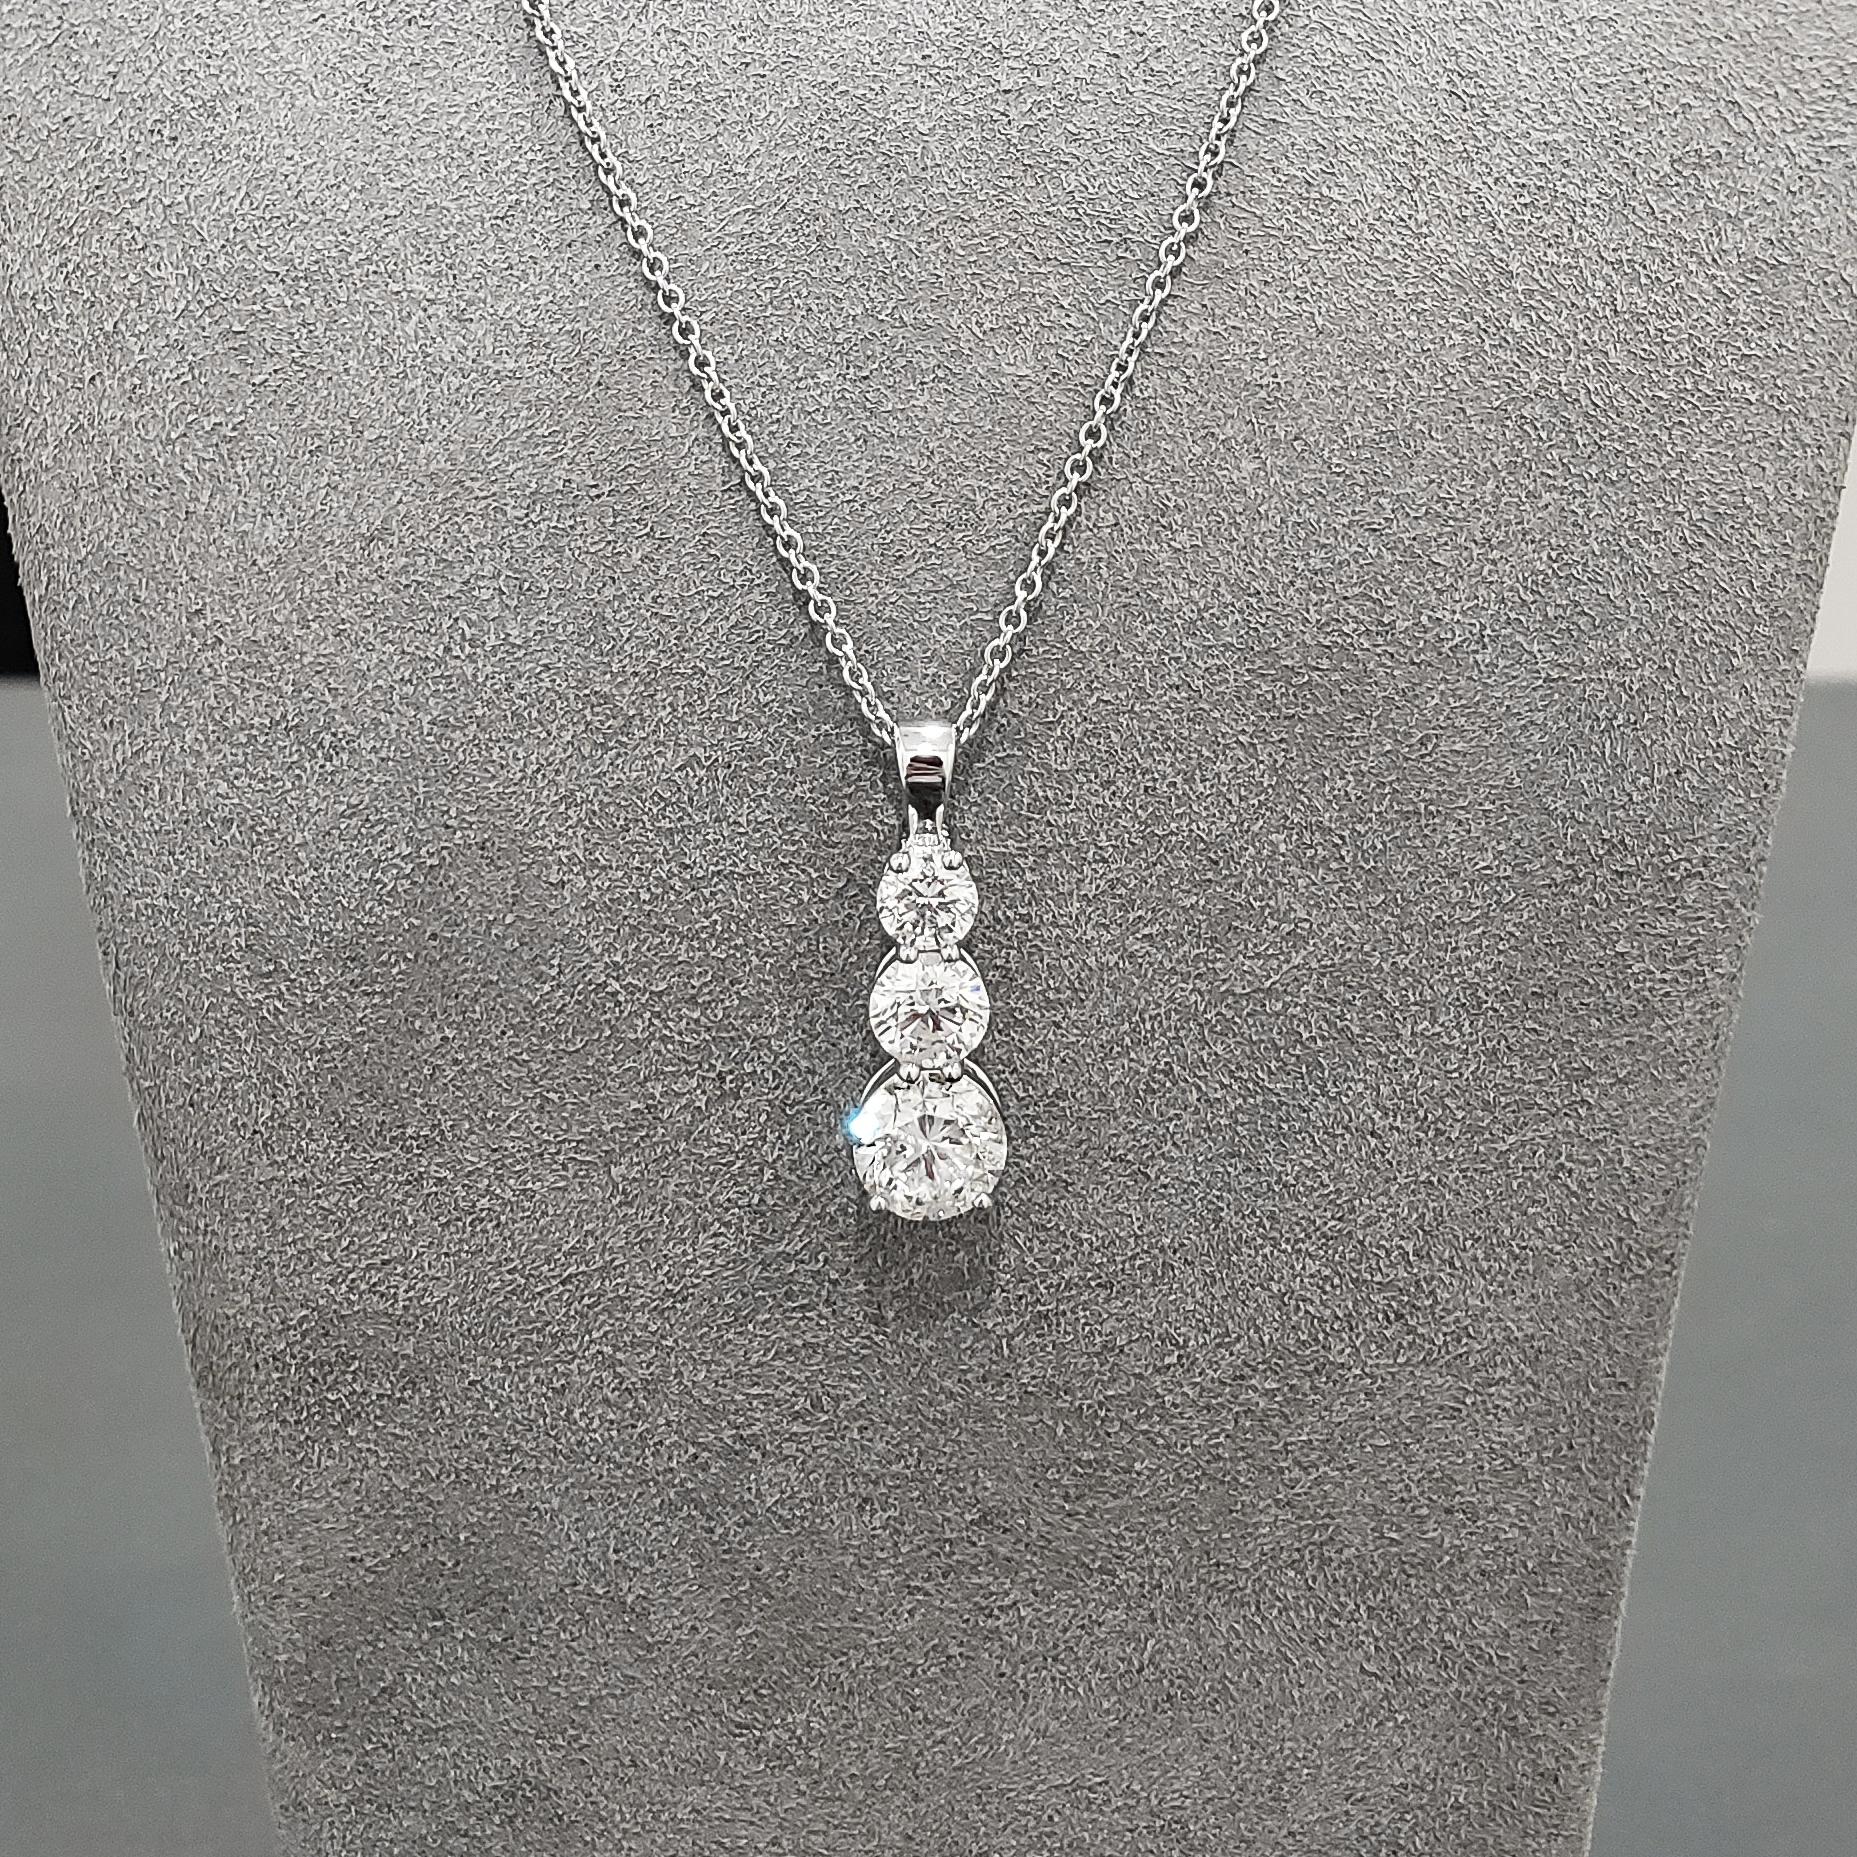 3 drop diamond necklace